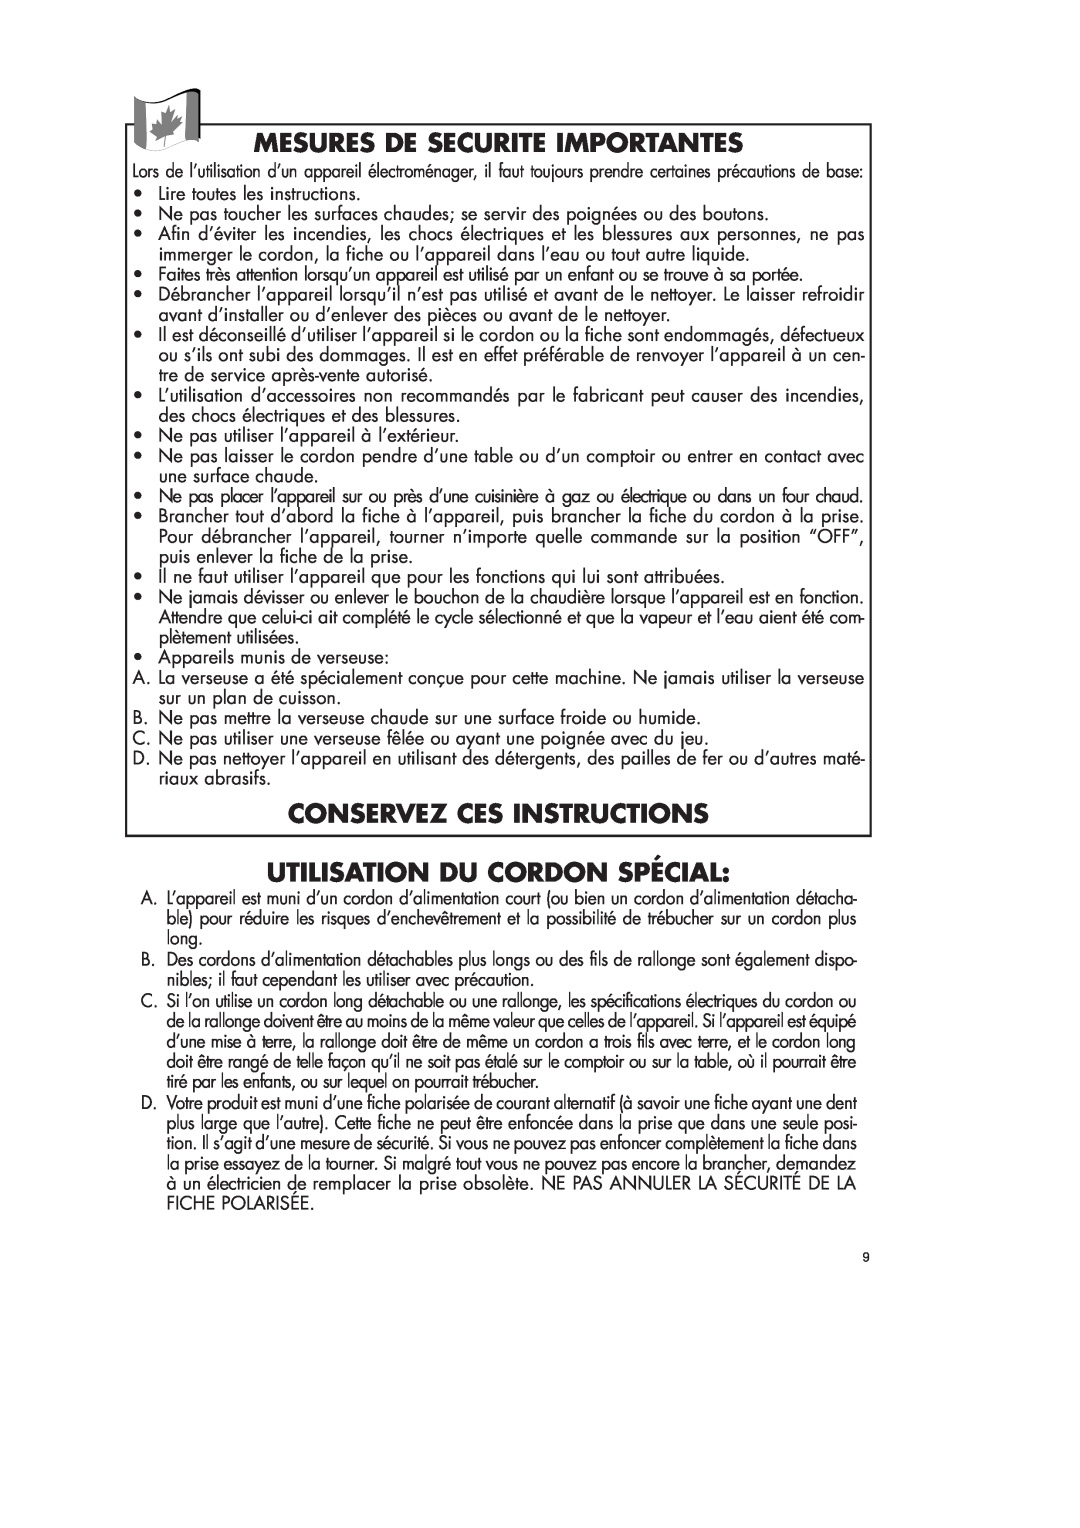 DeLonghi ICM18 WB Mesures De Securite Importantes, Conservez Ces Instructions, Utilisation Du Cordon Spécial 